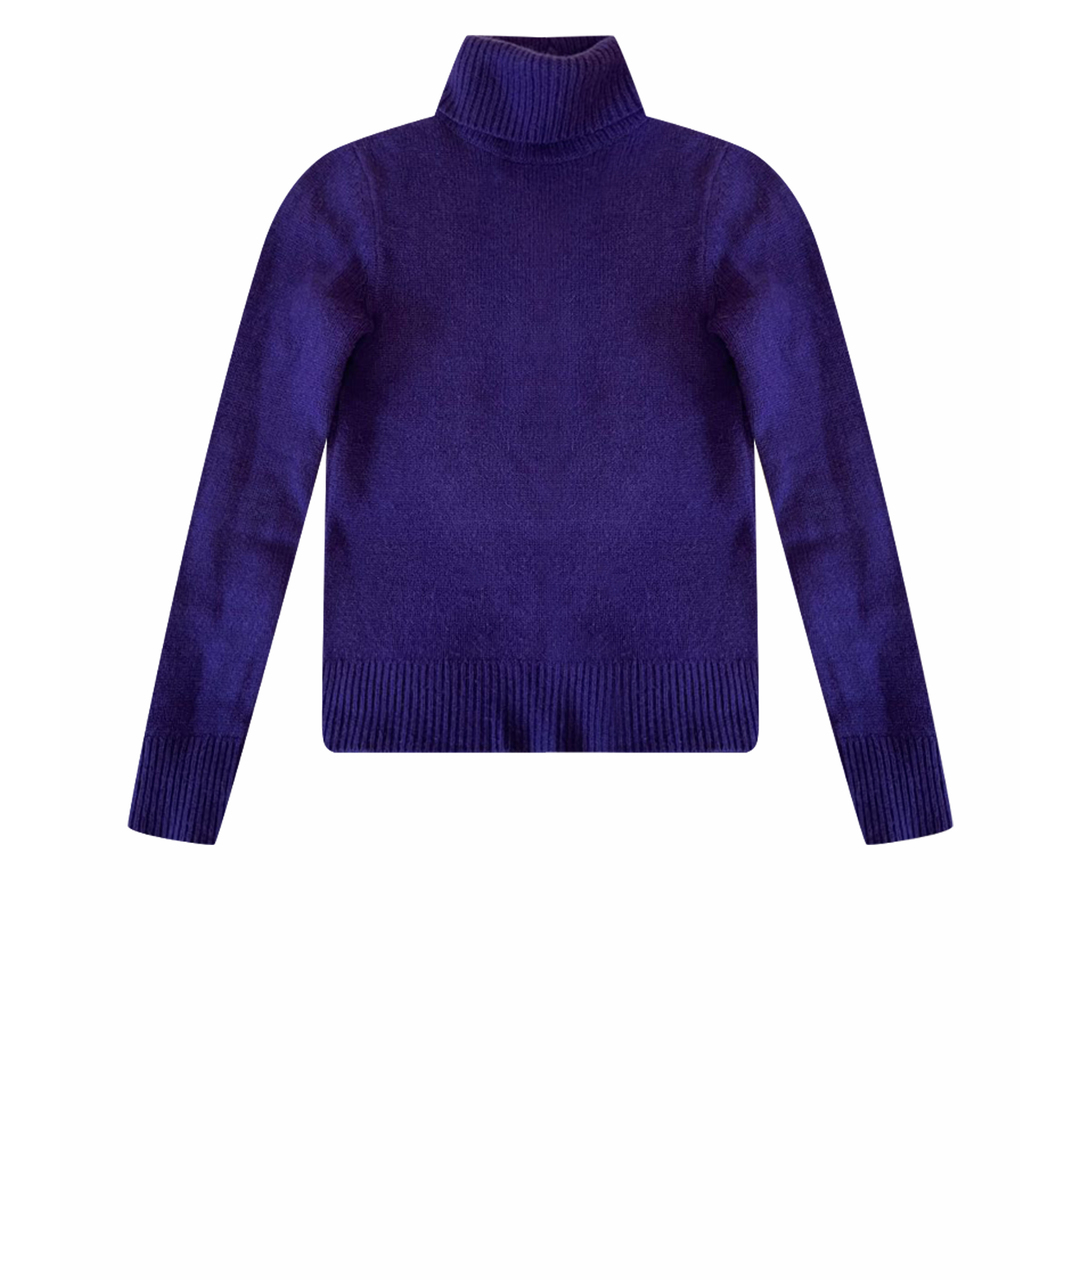 RALPH LAUREN Фиолетовый шерстяной джемпер / свитер, фото 1